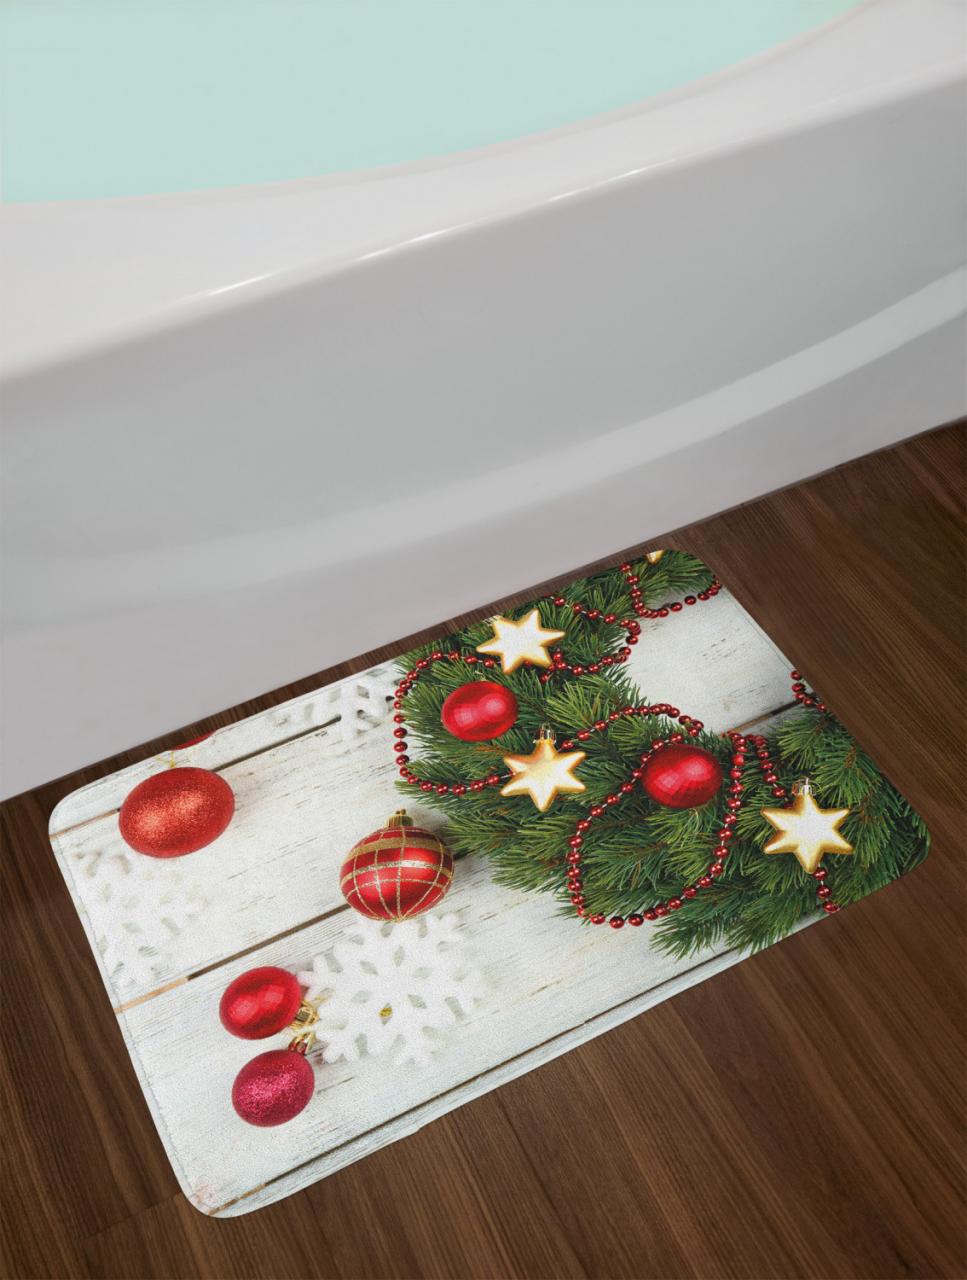 Candy Cane Bath Mat for Bathroom Home Decor Plush NonSlip Mat 29.5" X